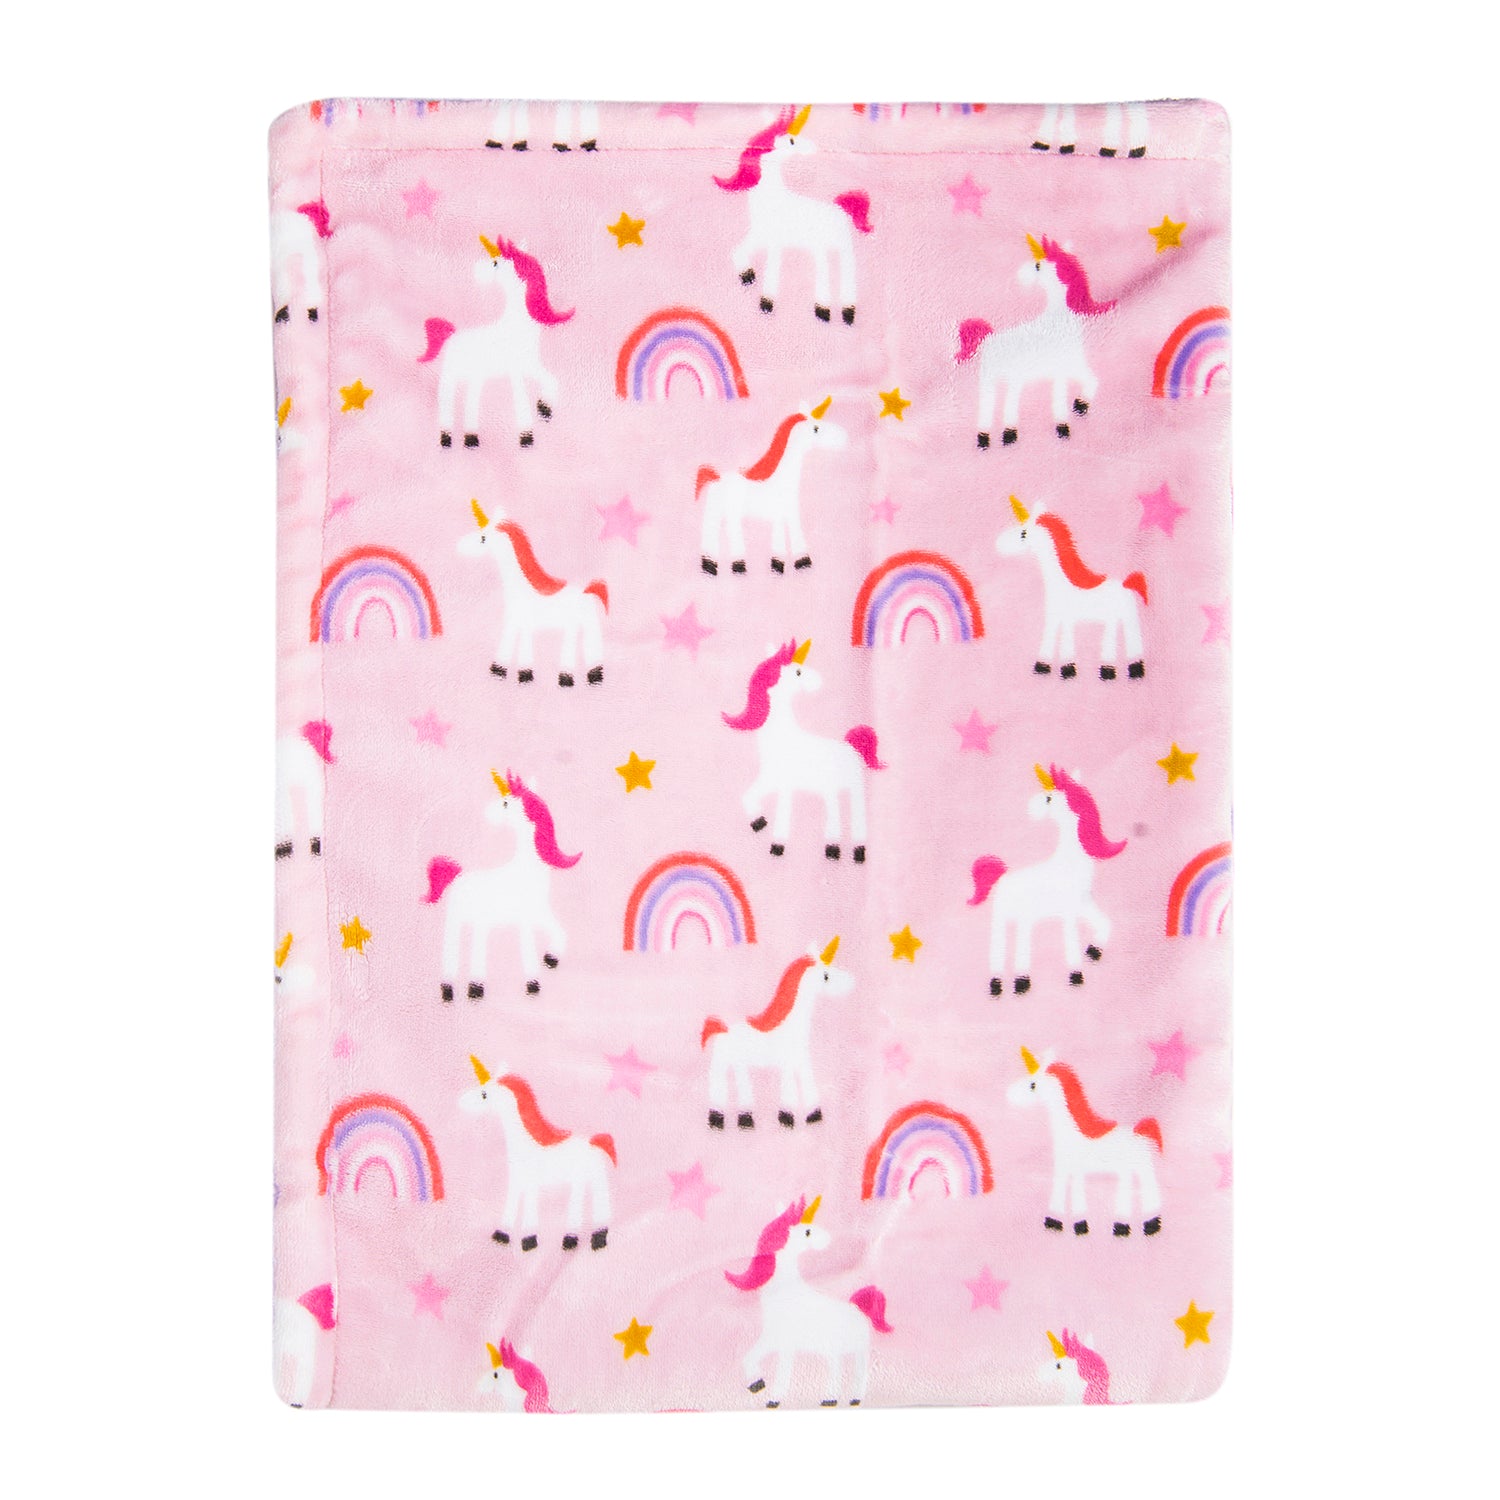 Baby Moo Whimsical Unicorn Soft Cozy Plush Blanket Pink